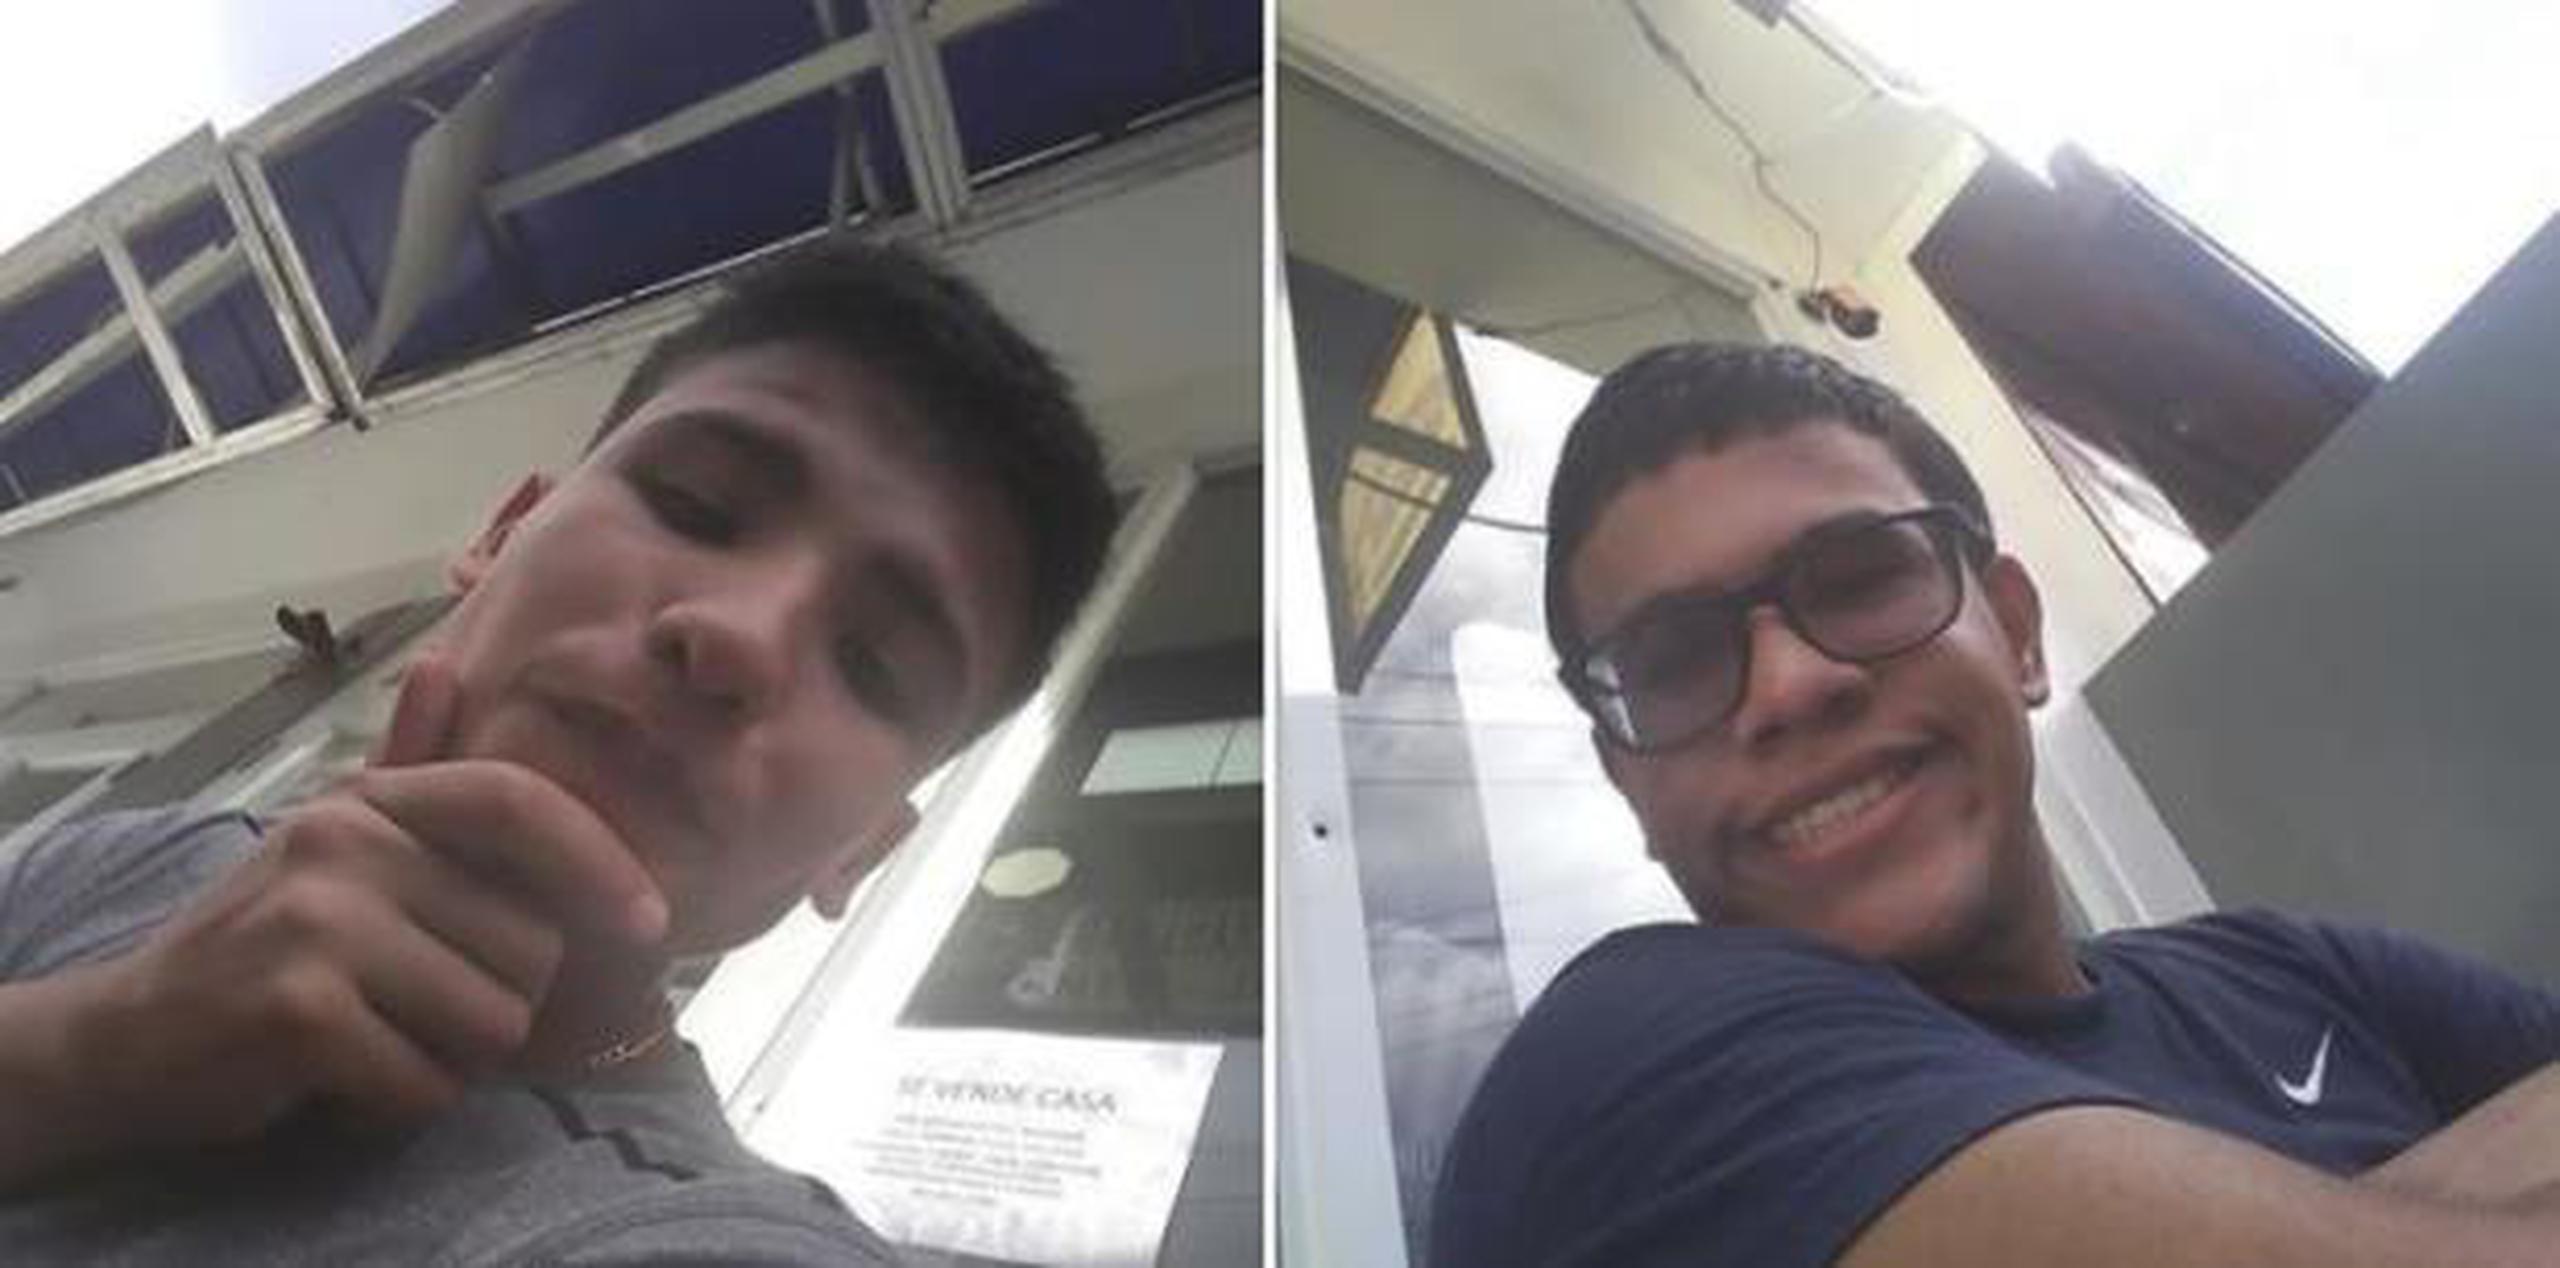 La ciudadana Raiza Colón Guzmán perdió su celular y los jóvenes que lo encontraron se tomaron fotos y vídeos antes de entregarlo. (Facebook / Raiza Colon Guzman)